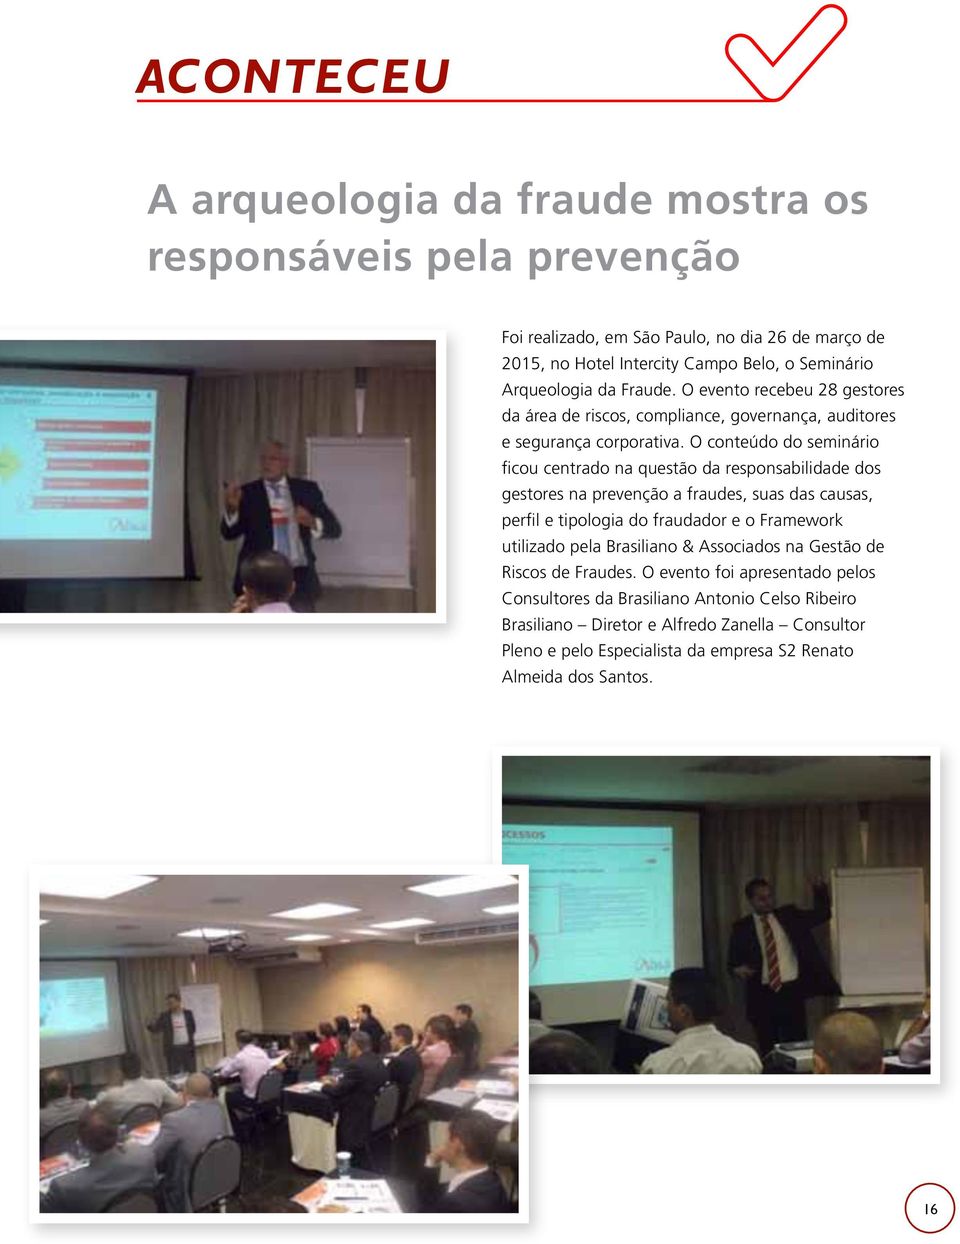 O conteúdo do seminário ficou centrado na questão da responsabilidade dos gestores na prevenção a fraudes, suas das causas, perfil e tipologia do fraudador e o Framework utilizado pela